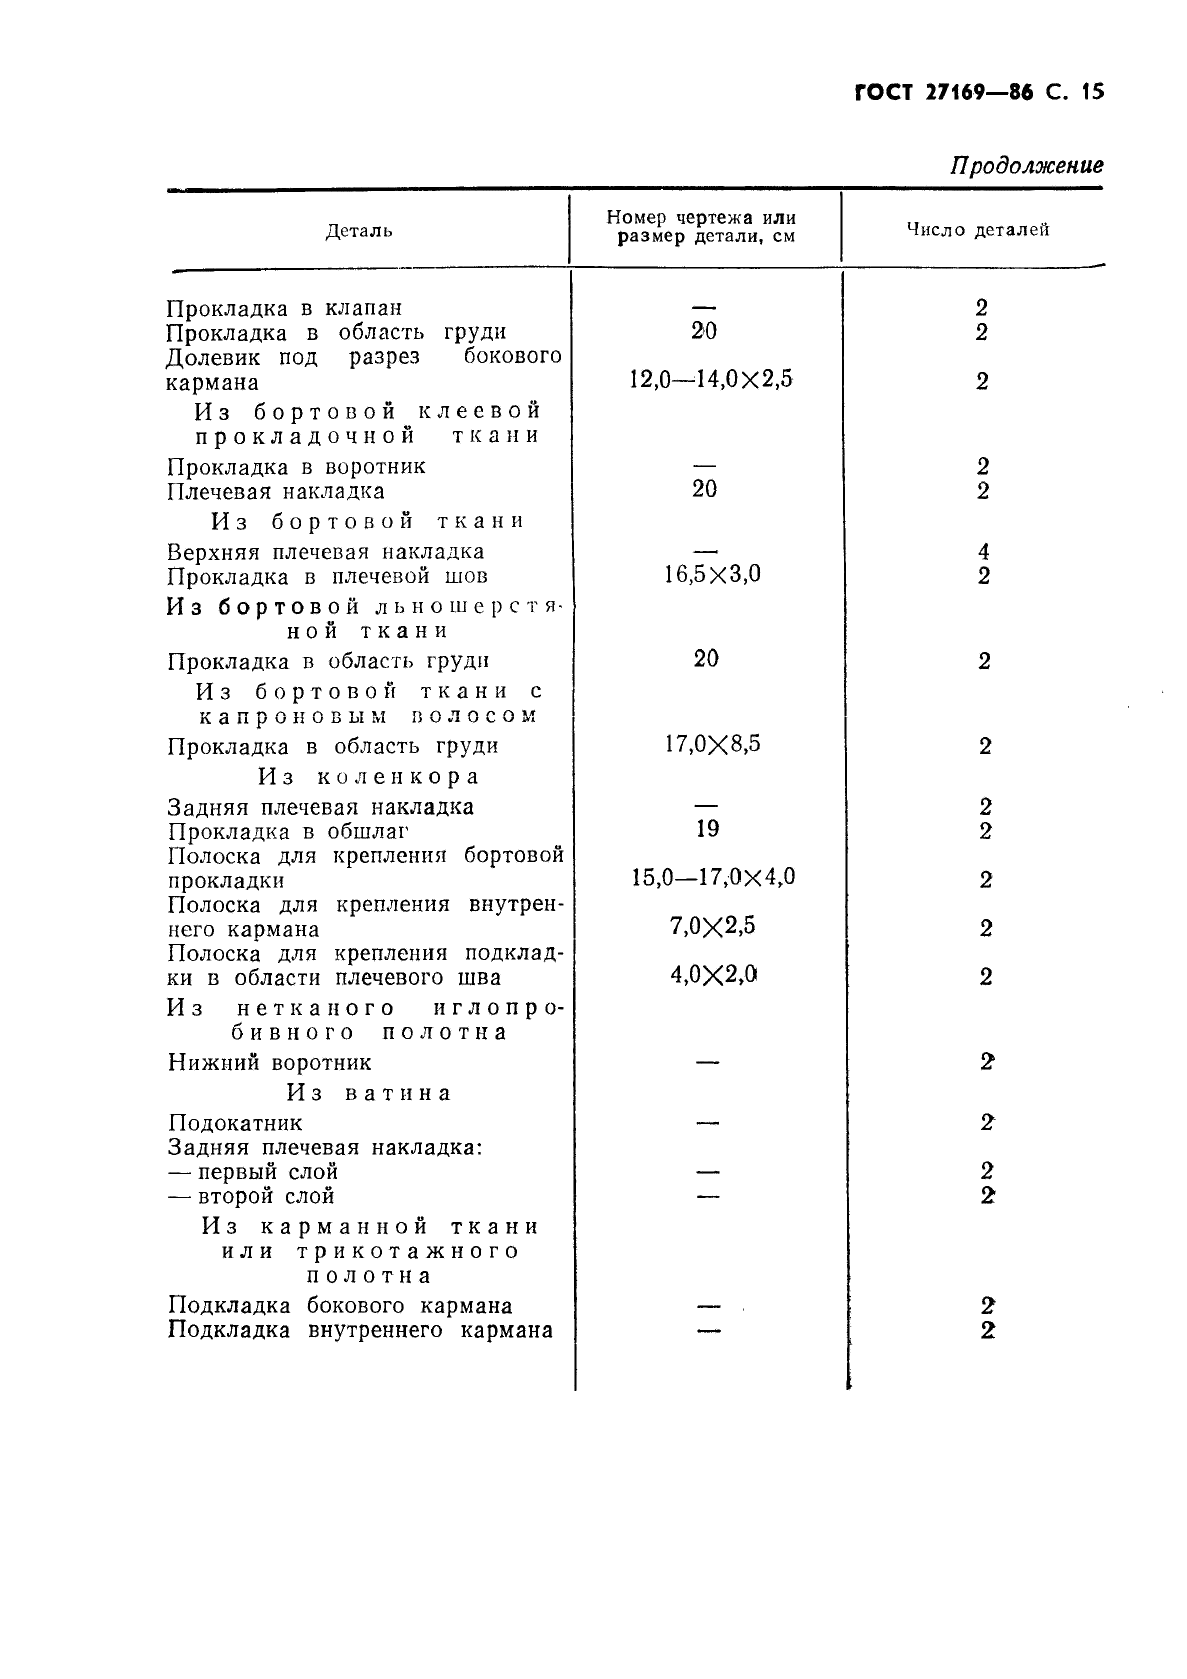 ГОСТ 27169-86 Мундир и китель для офицеров и прапорщиков Советской Армии. Технические условия (фото 17 из 42)